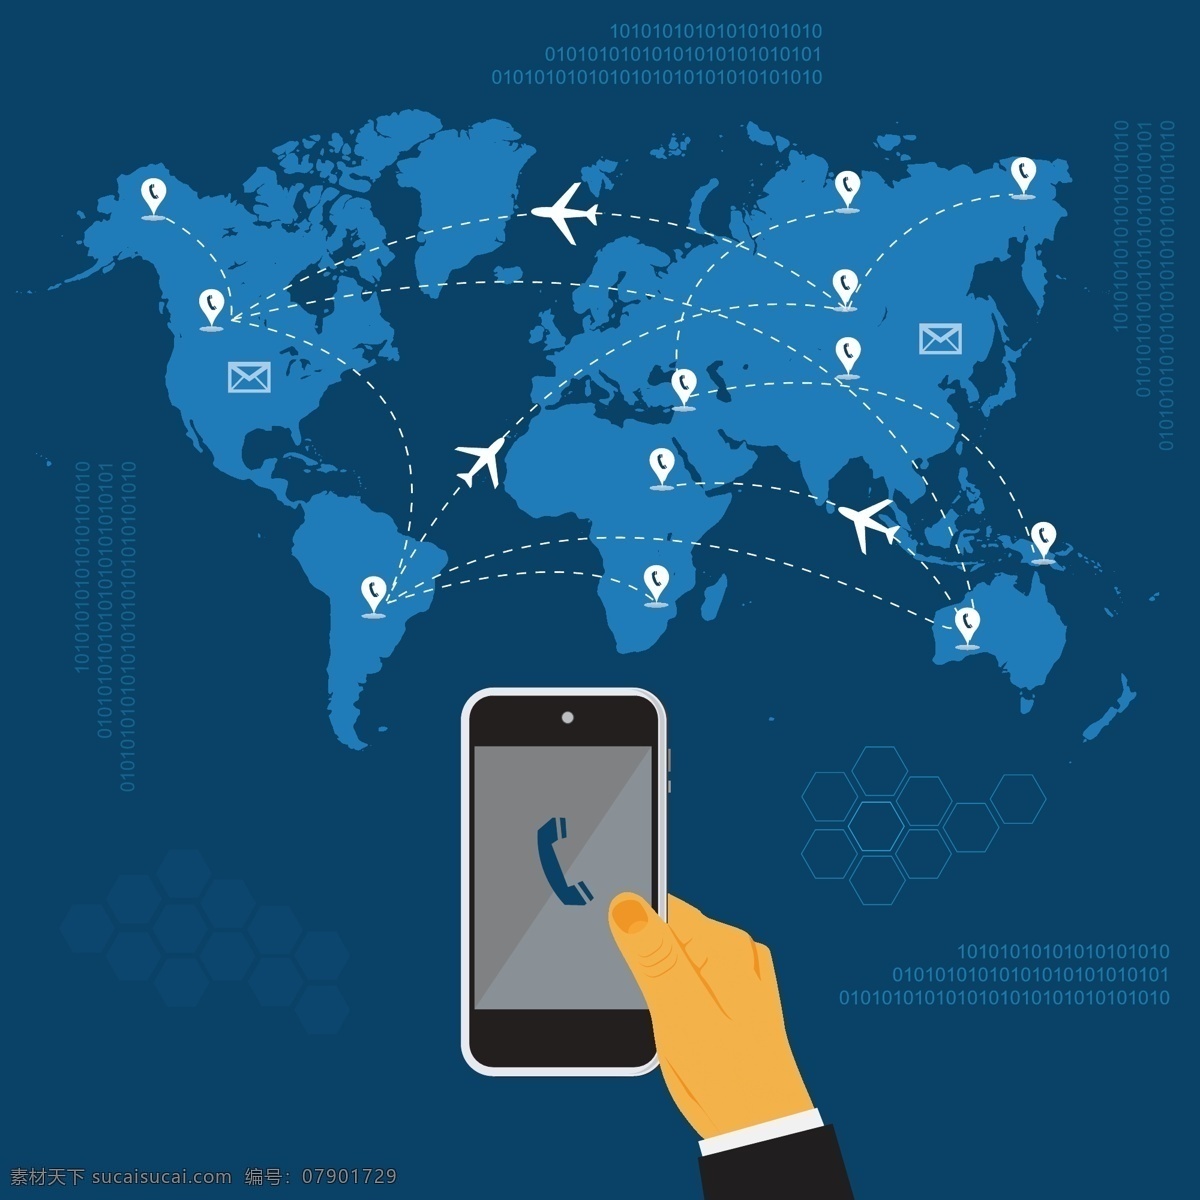 世界地图 世界 地图 贸易 物流 飞机 导航 手机 电话 赚钱 钱